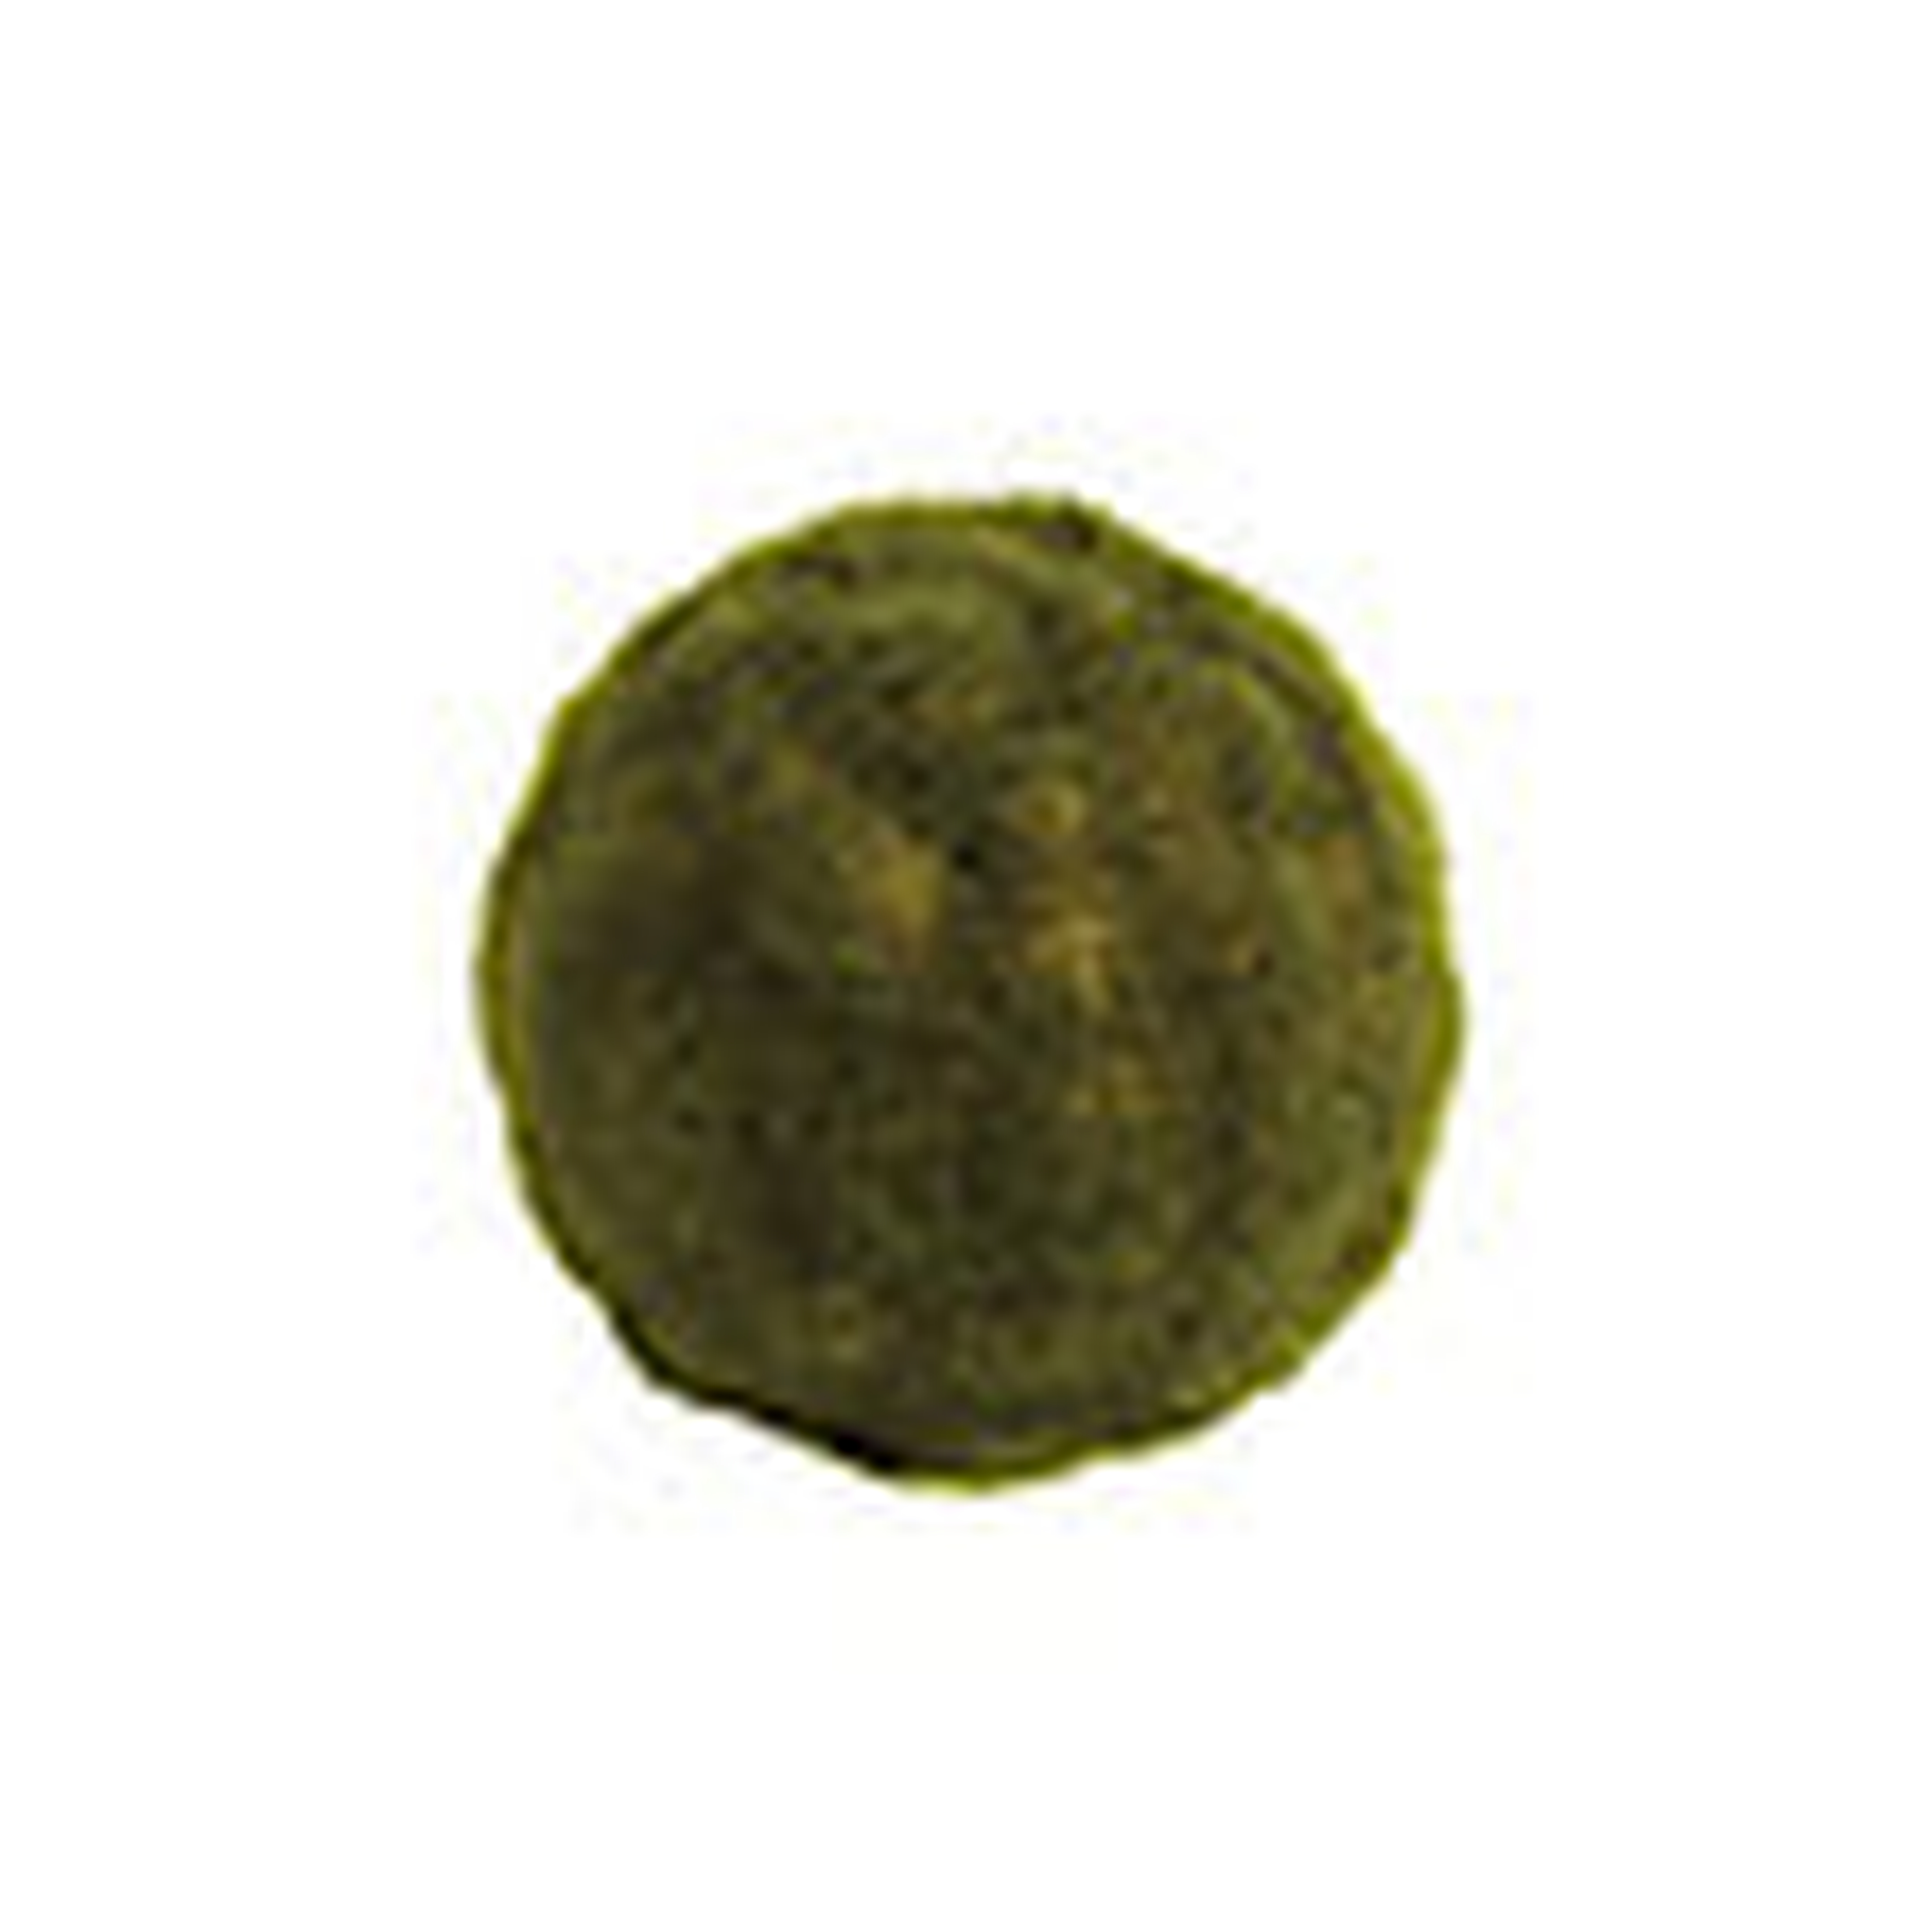 Moss Sphere - 4" - Ballard Designs